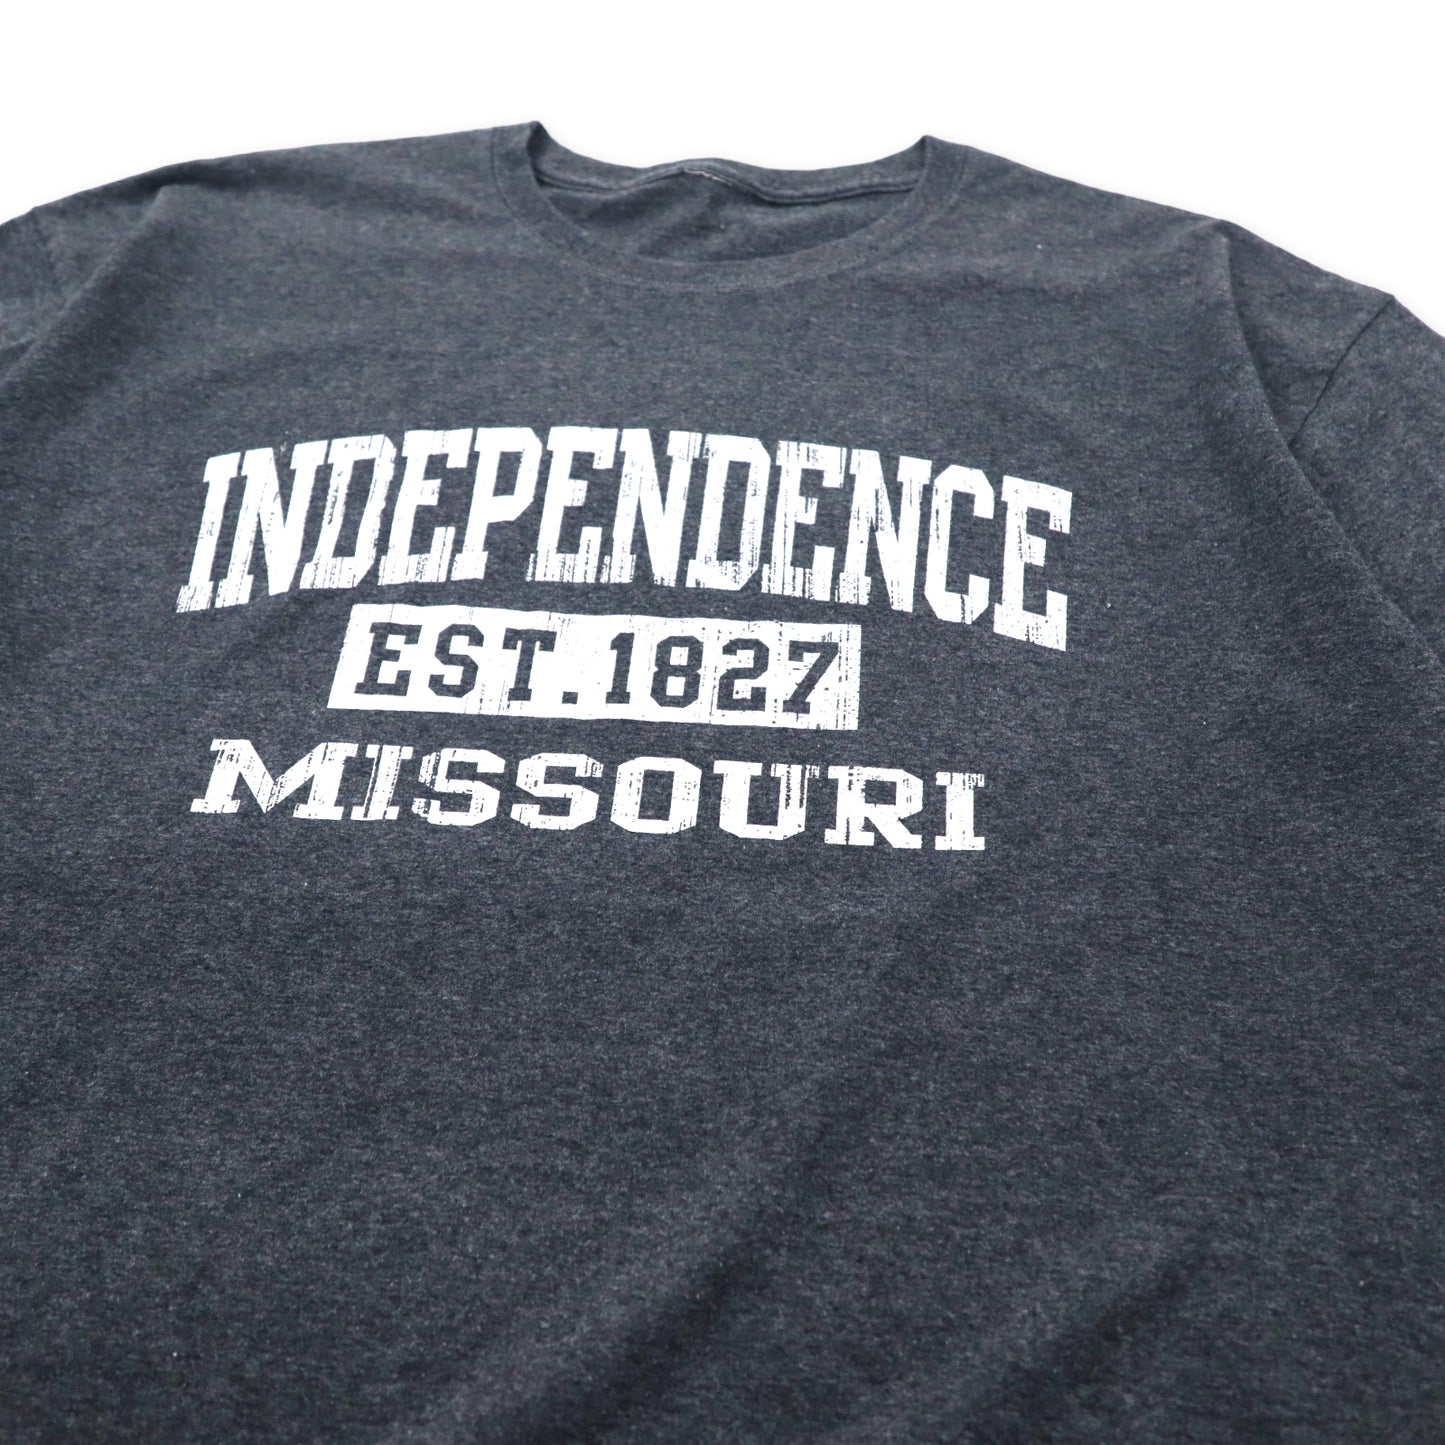 INDEPENDENCE MISSOURI カレッジプリント Tシャツ XL グレー コットン